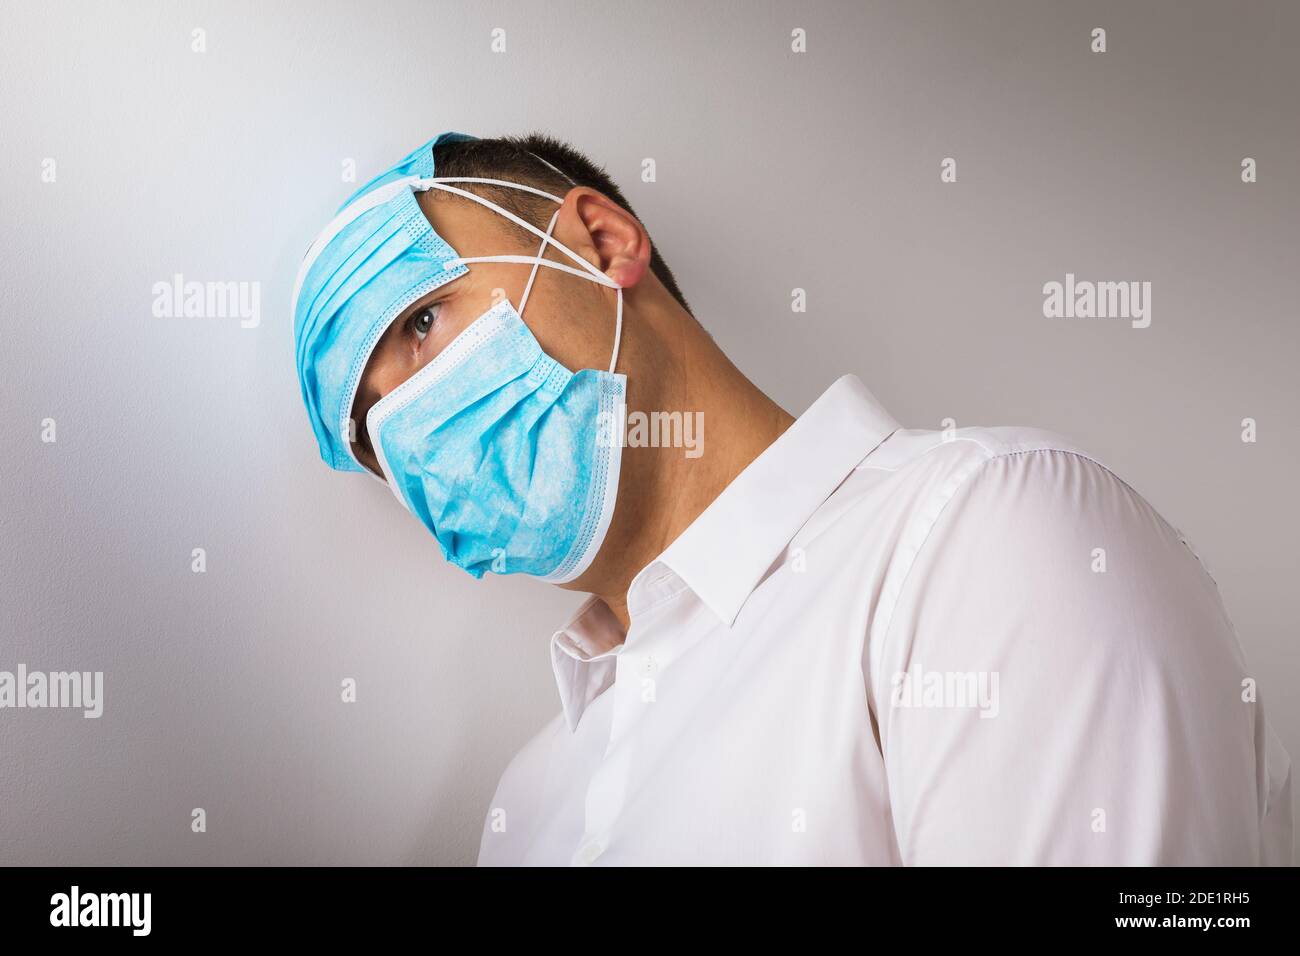 Der Mann in medizinischen Masken lehnte seinen Kopf gegen die Wand. Konzept zum Thema Depression aufgrund der Quarantäne durch das Coronavirus. Stockfoto